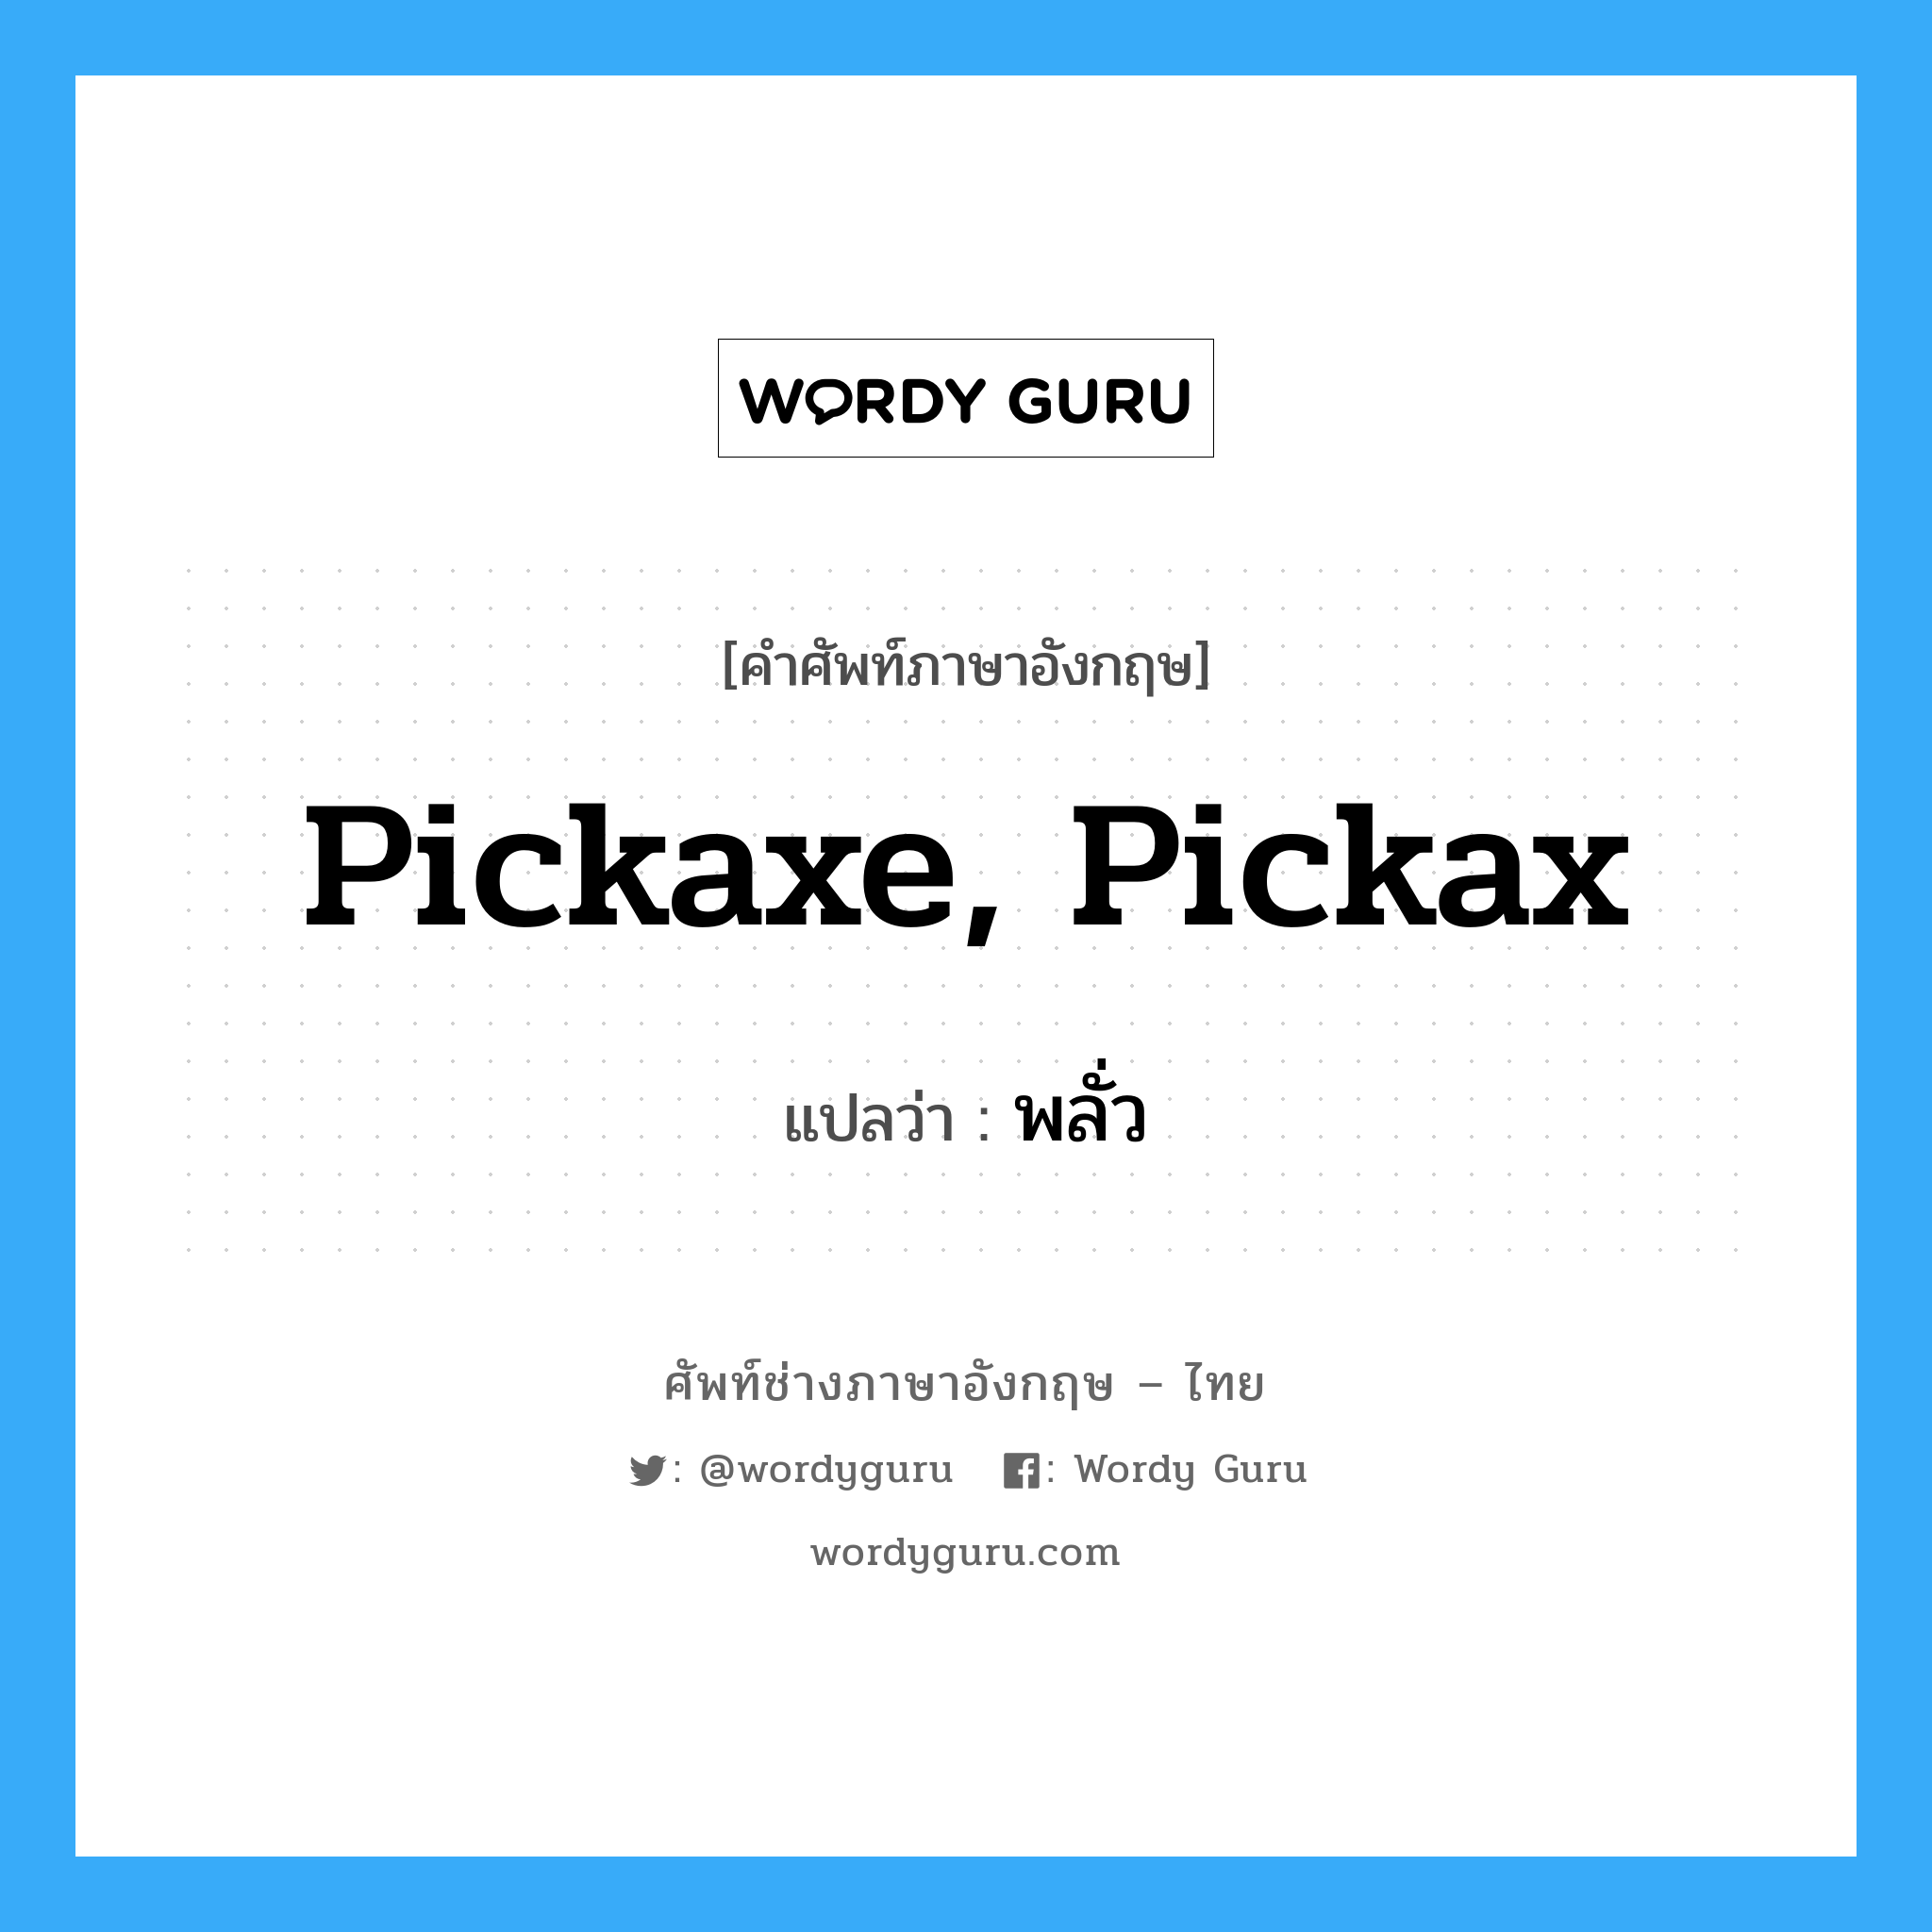 พลั่ว ภาษาอังกฤษ?, คำศัพท์ช่างภาษาอังกฤษ - ไทย พลั่ว คำศัพท์ภาษาอังกฤษ พลั่ว แปลว่า pickaxe, pickax